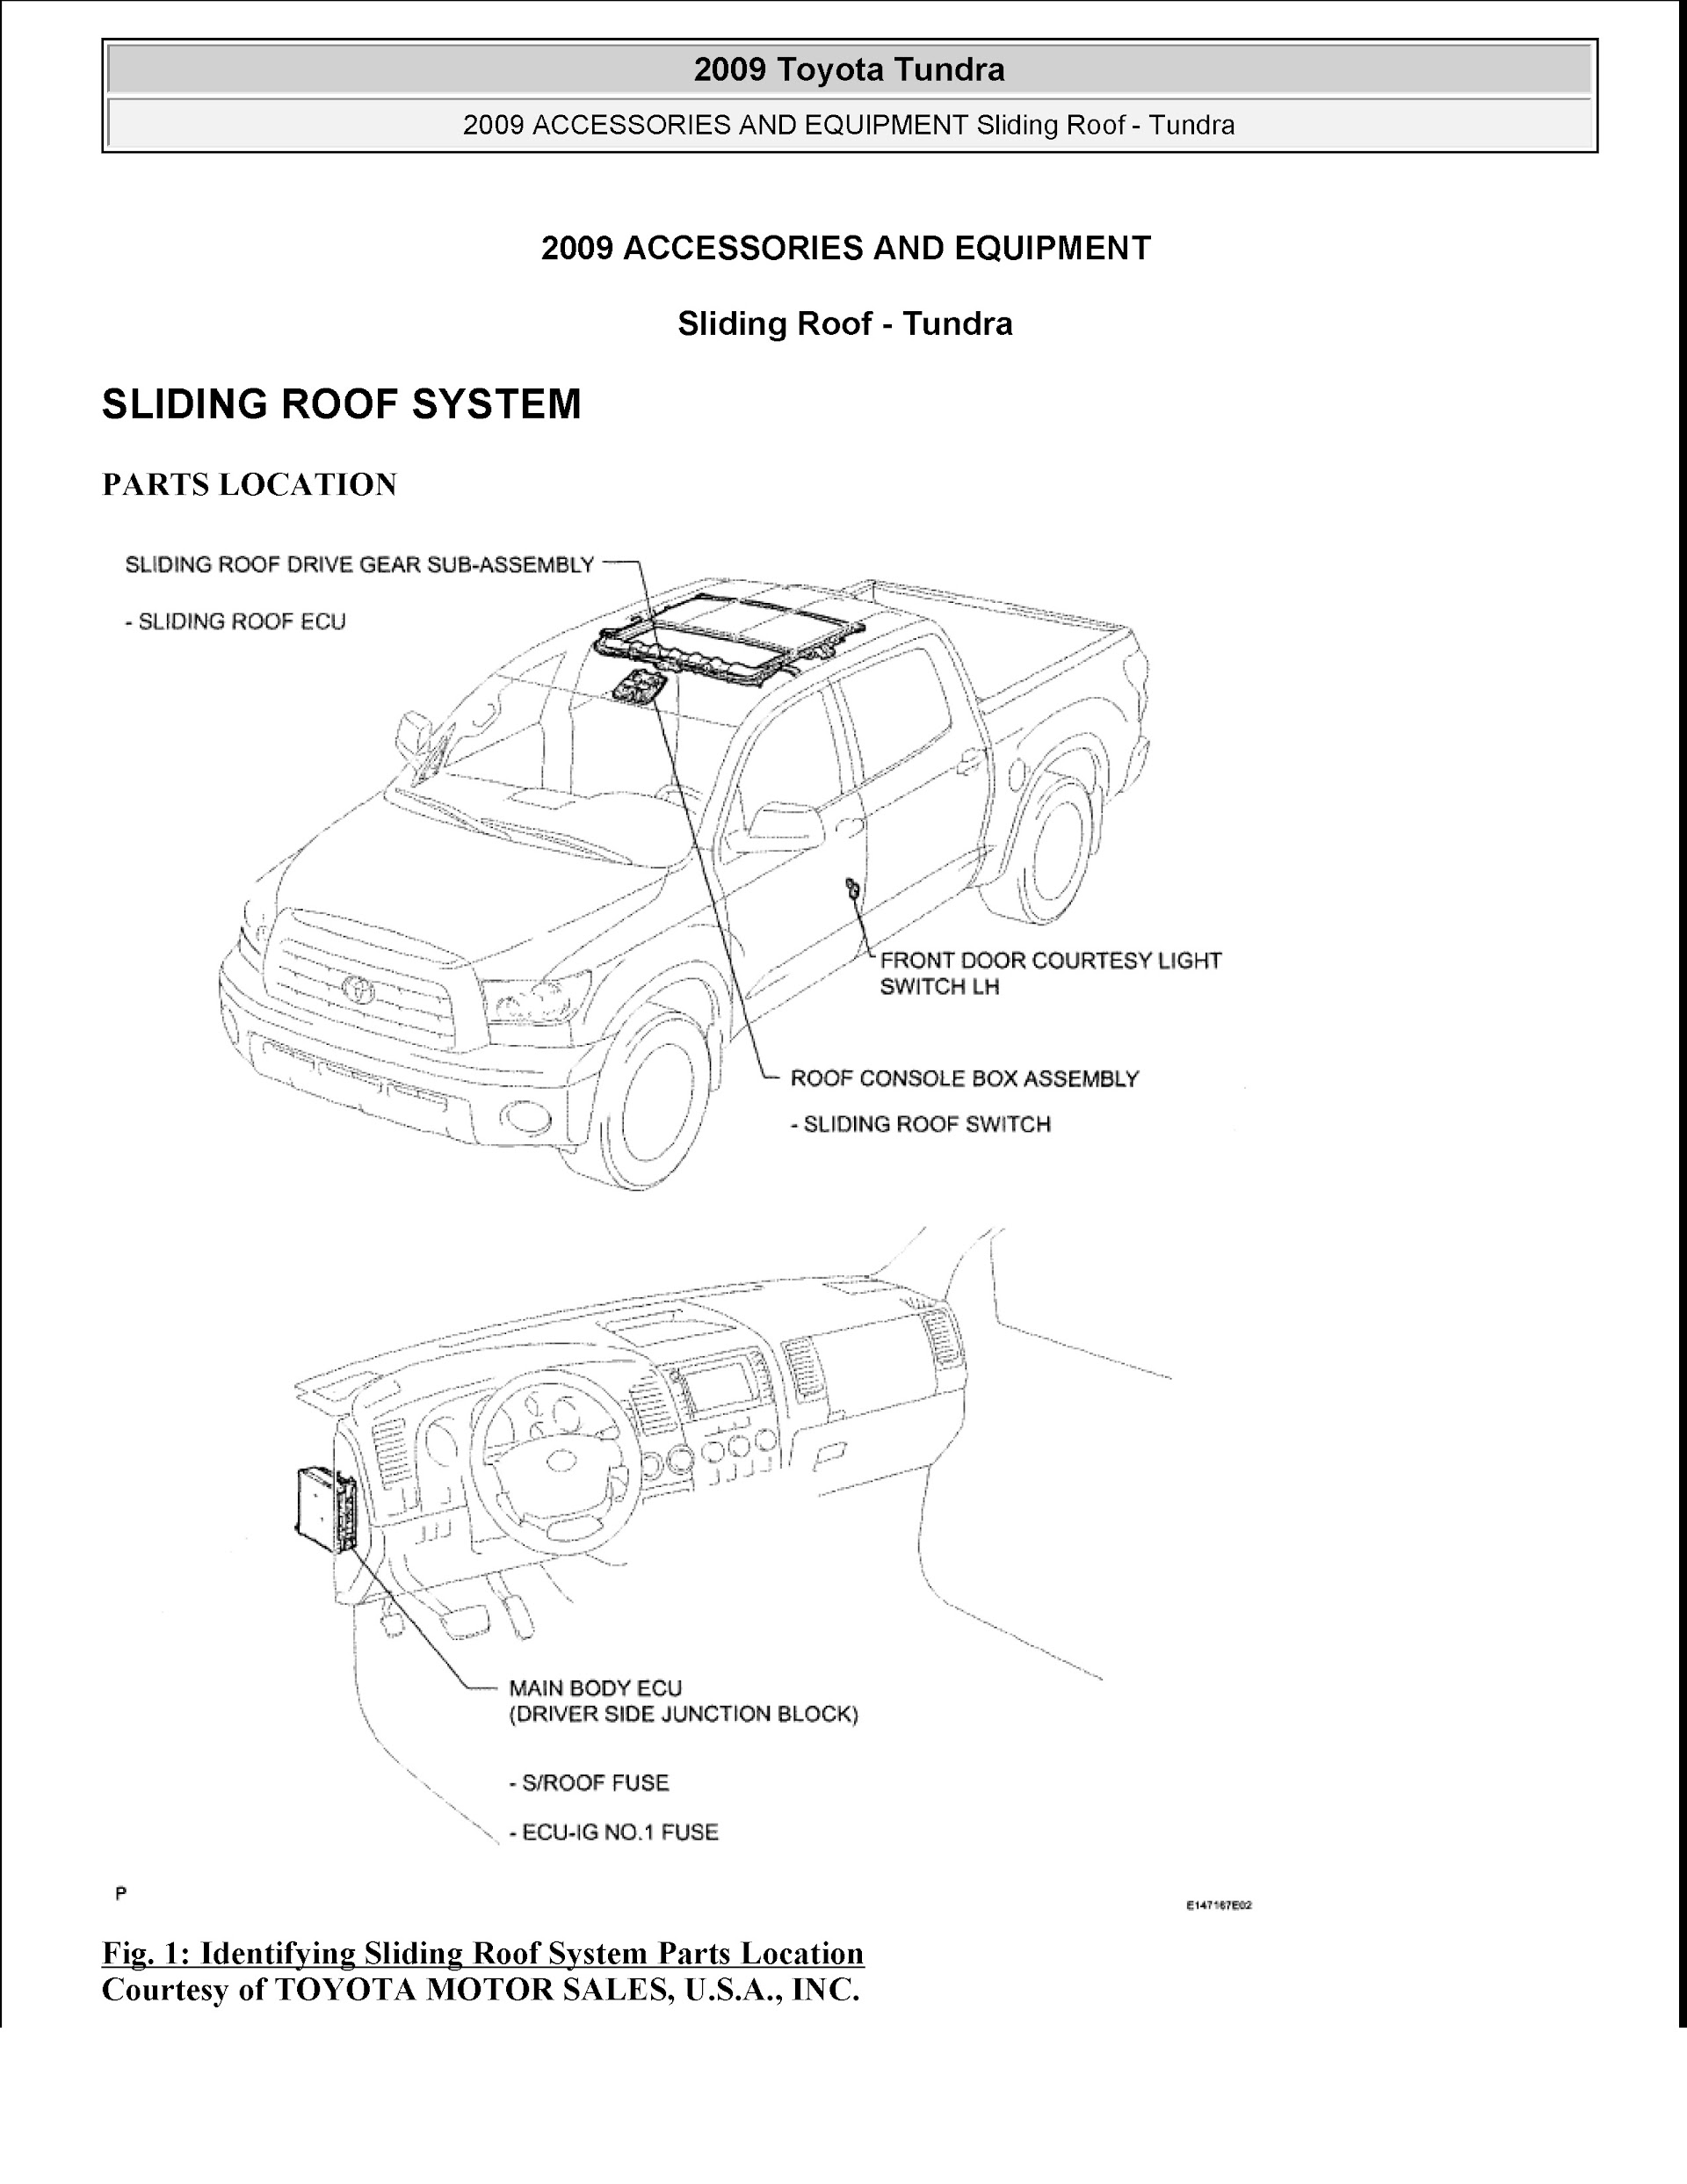 Download 2007-2010 Toyota Tundra Repair Manual.